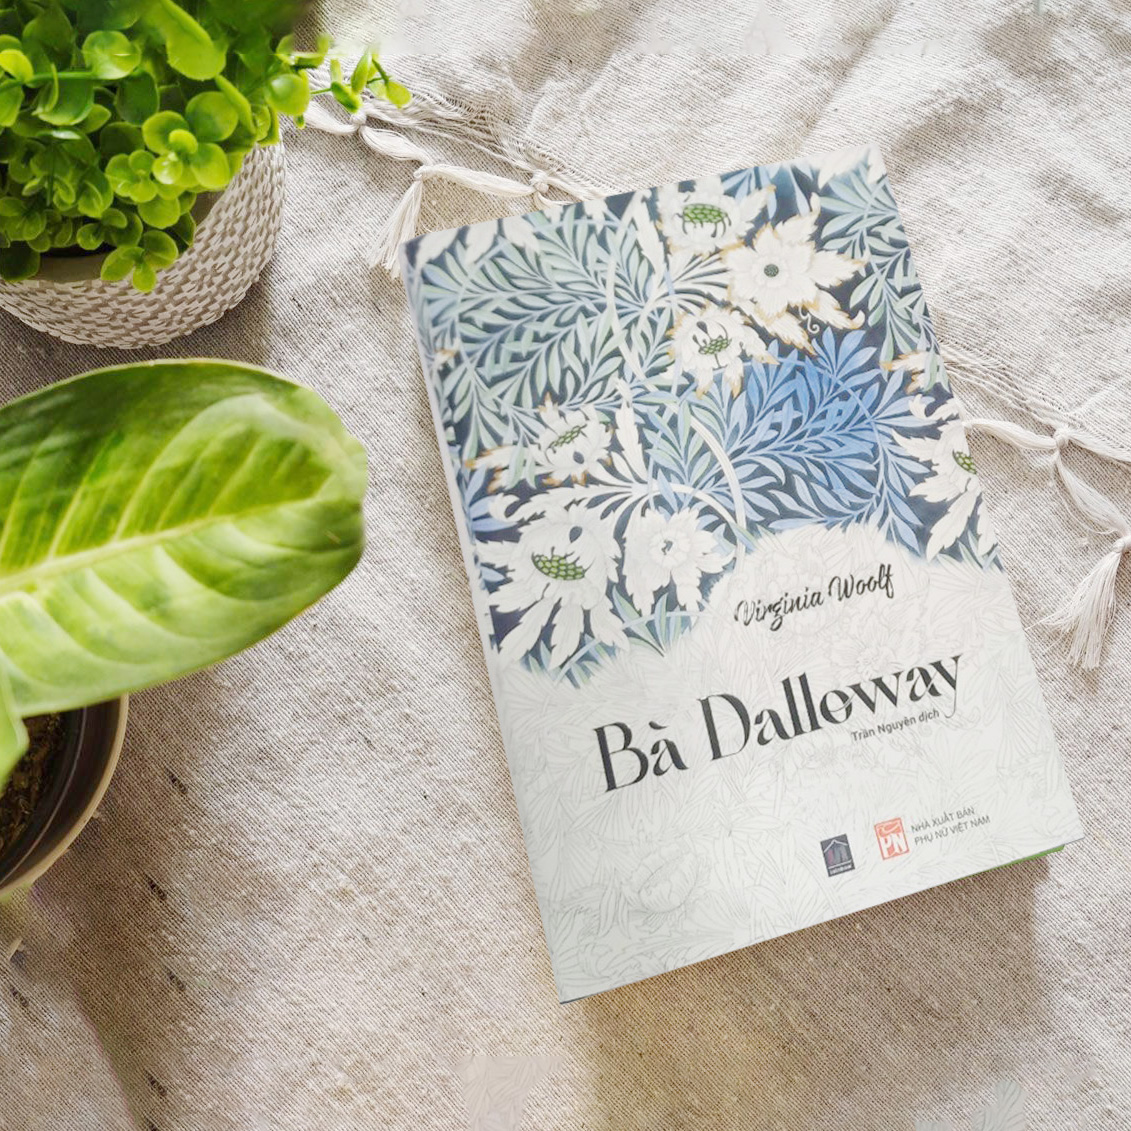 BÀ DALLOWAY (bản giới hạn, bìa cứng) - RAINBOW BOOKS (Trần Nguyên dịch)